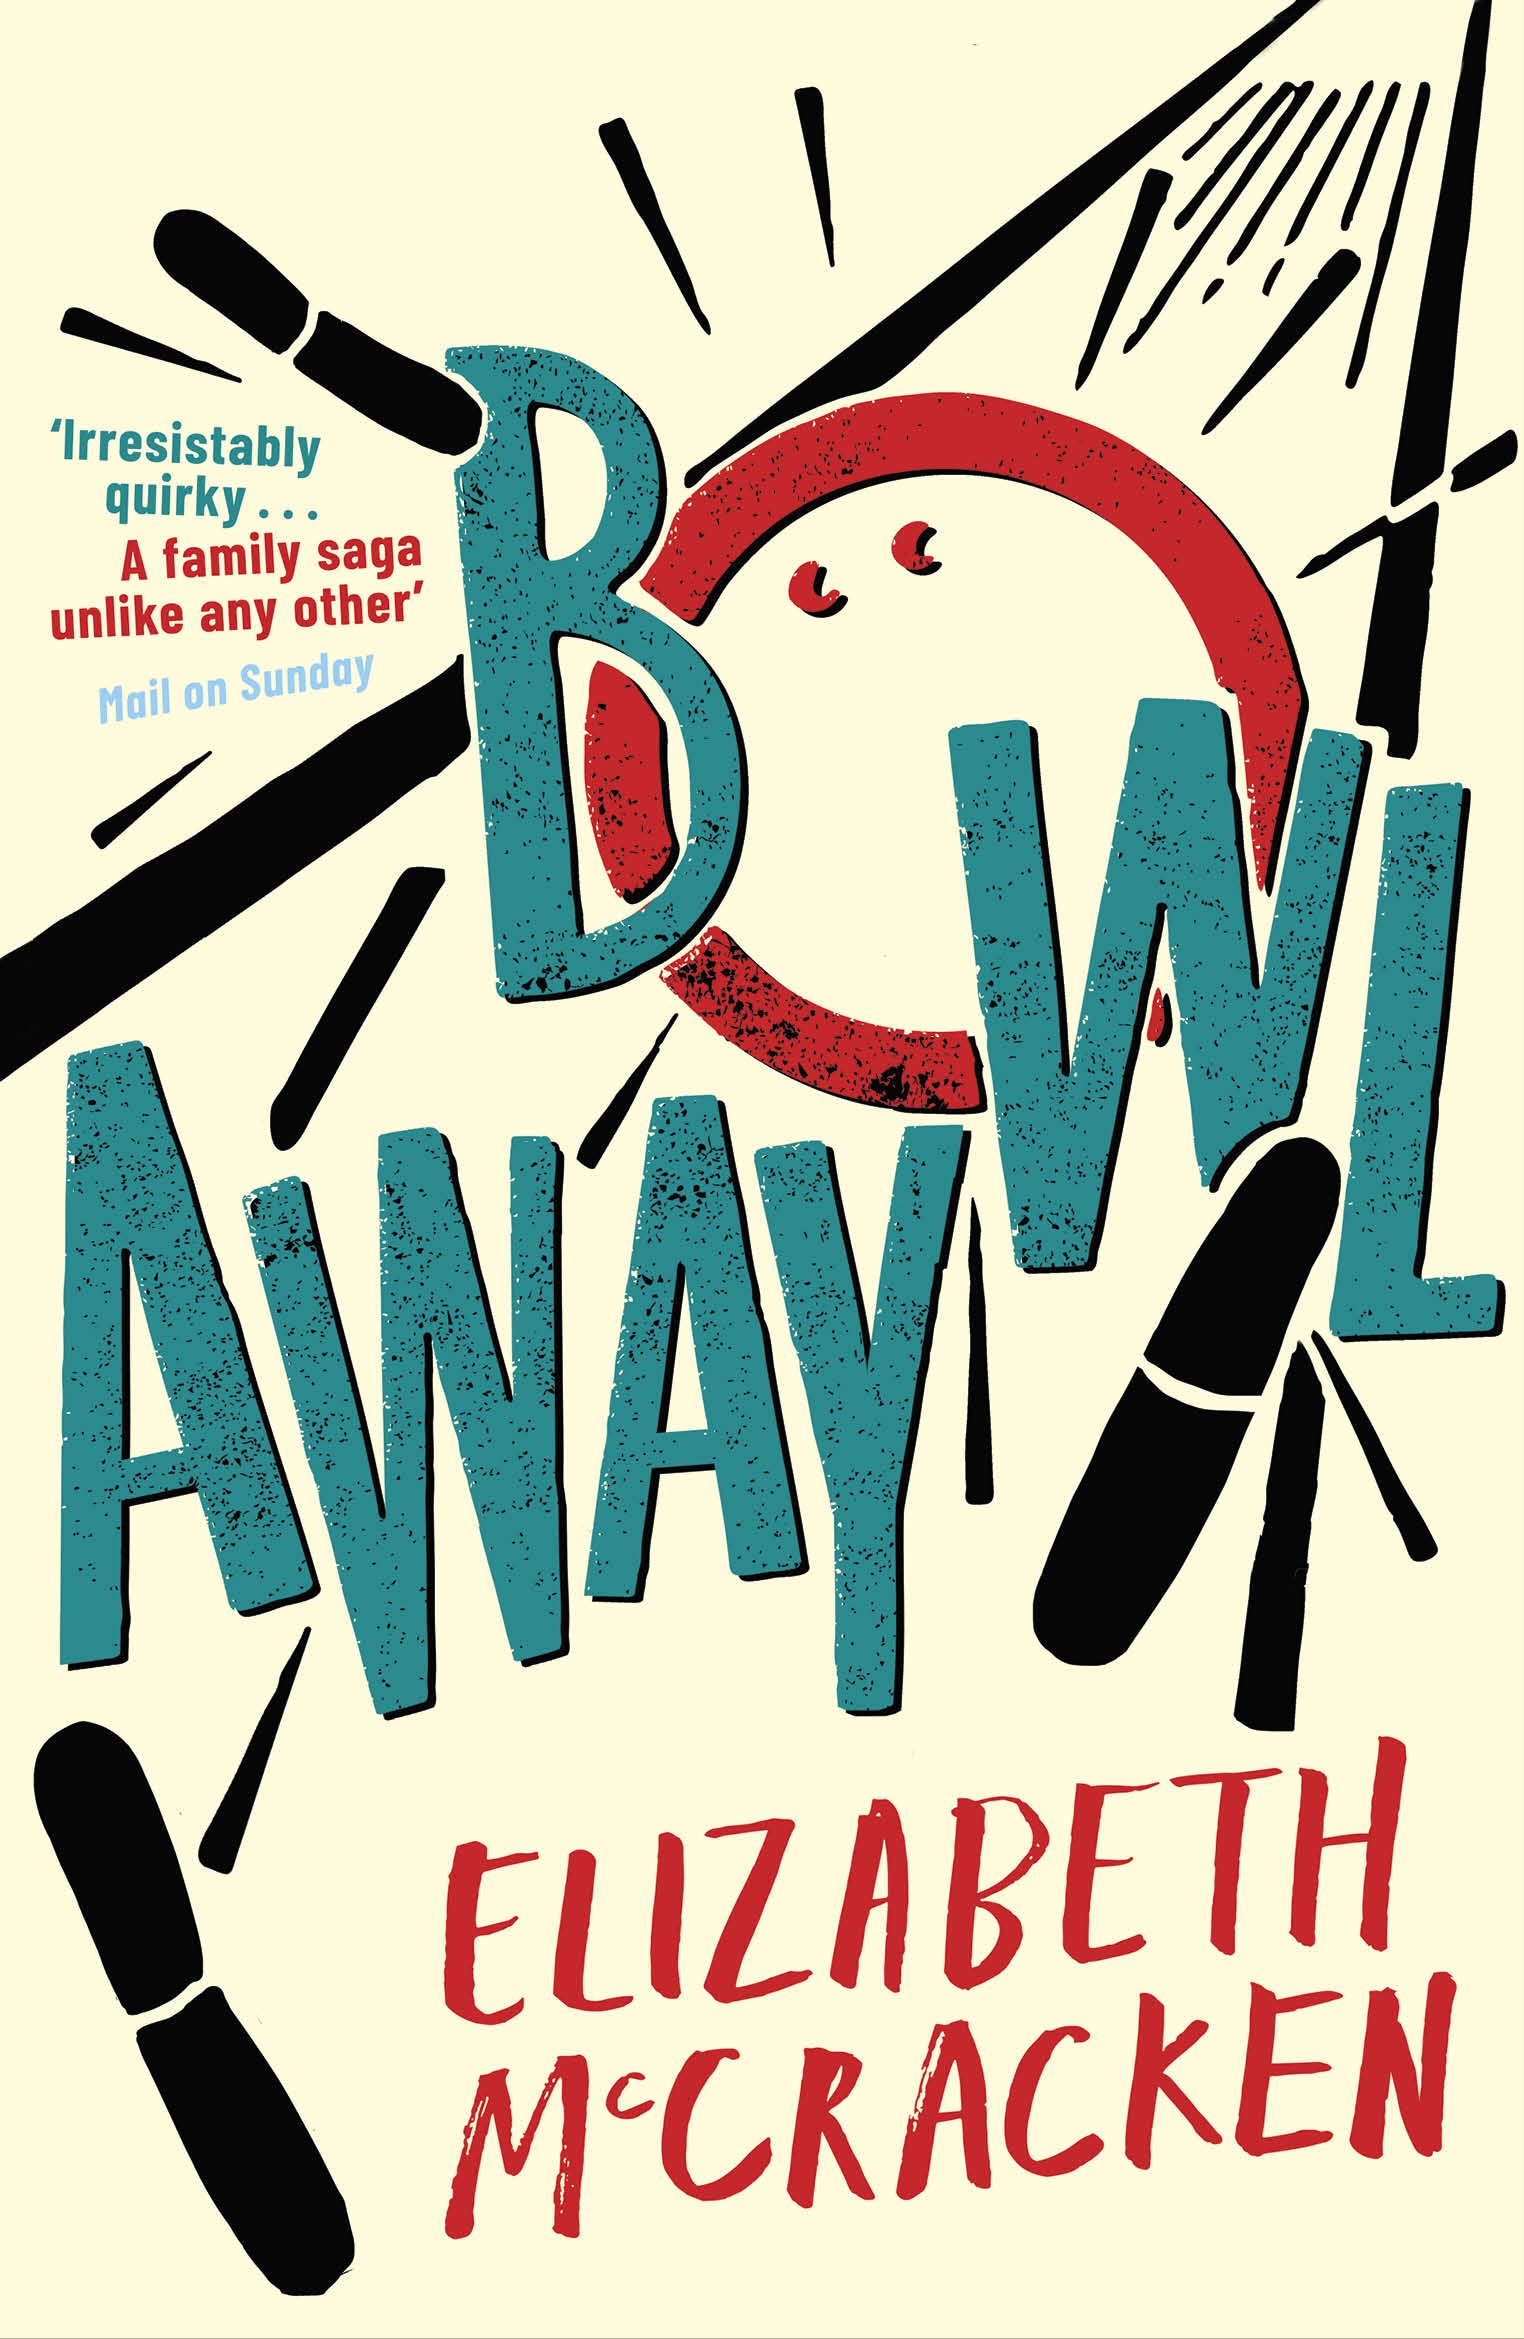 Book “Bowlaway” by Elizabeth McCracken — March 12, 2020